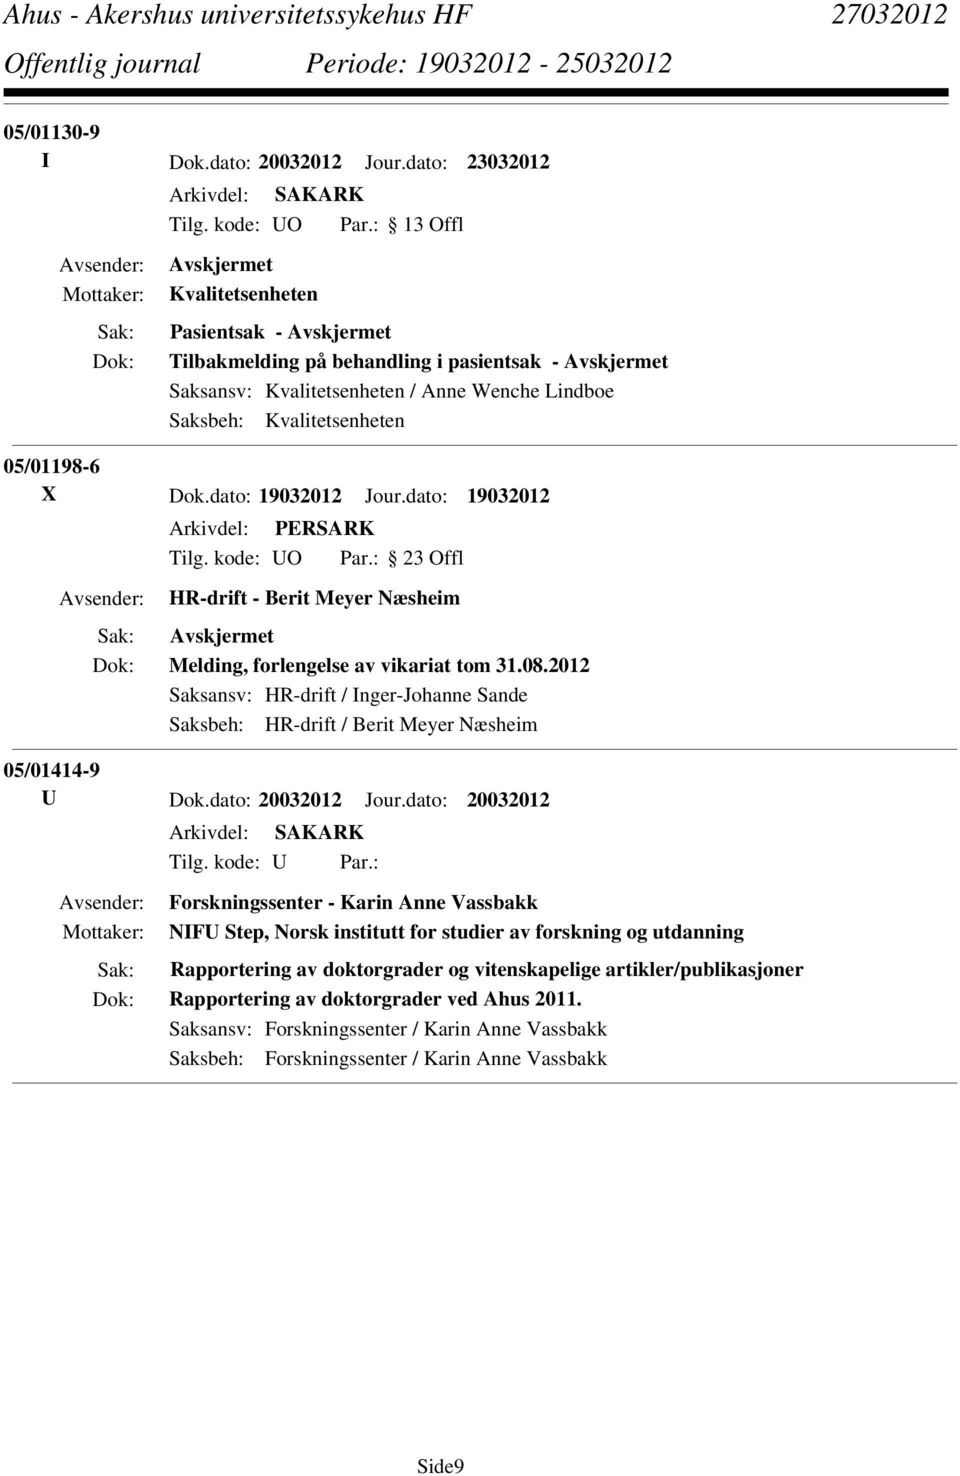 dato: 19032012 HR-drift - Berit Meyer Næsheim Melding, forlengelse av vikariat tom 31.08.2012 Saksansv: HR-drift / Inger-Johanne Sande Saksbeh: HR-drift / Berit Meyer Næsheim 05/01414-9 U Dok.